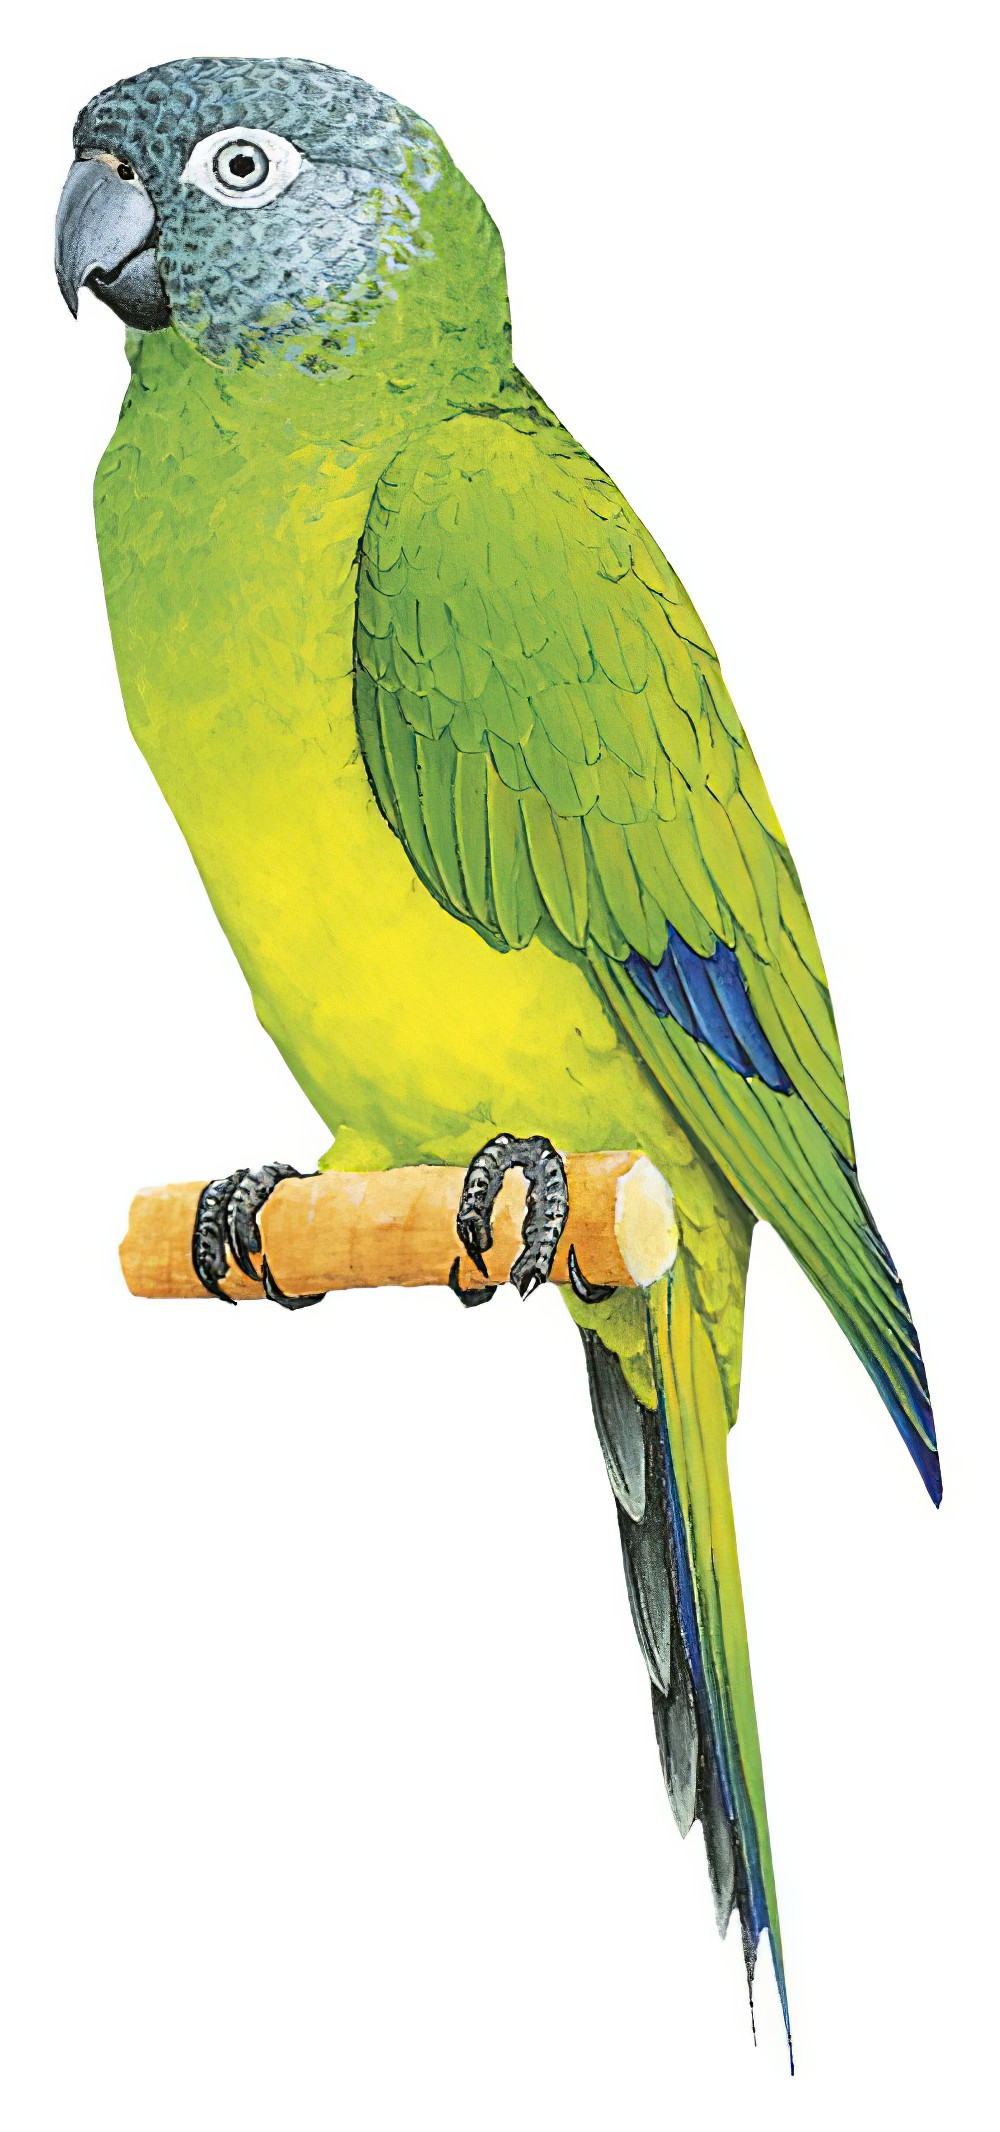 Dusky-headed Parakeet / Aratinga weddellii